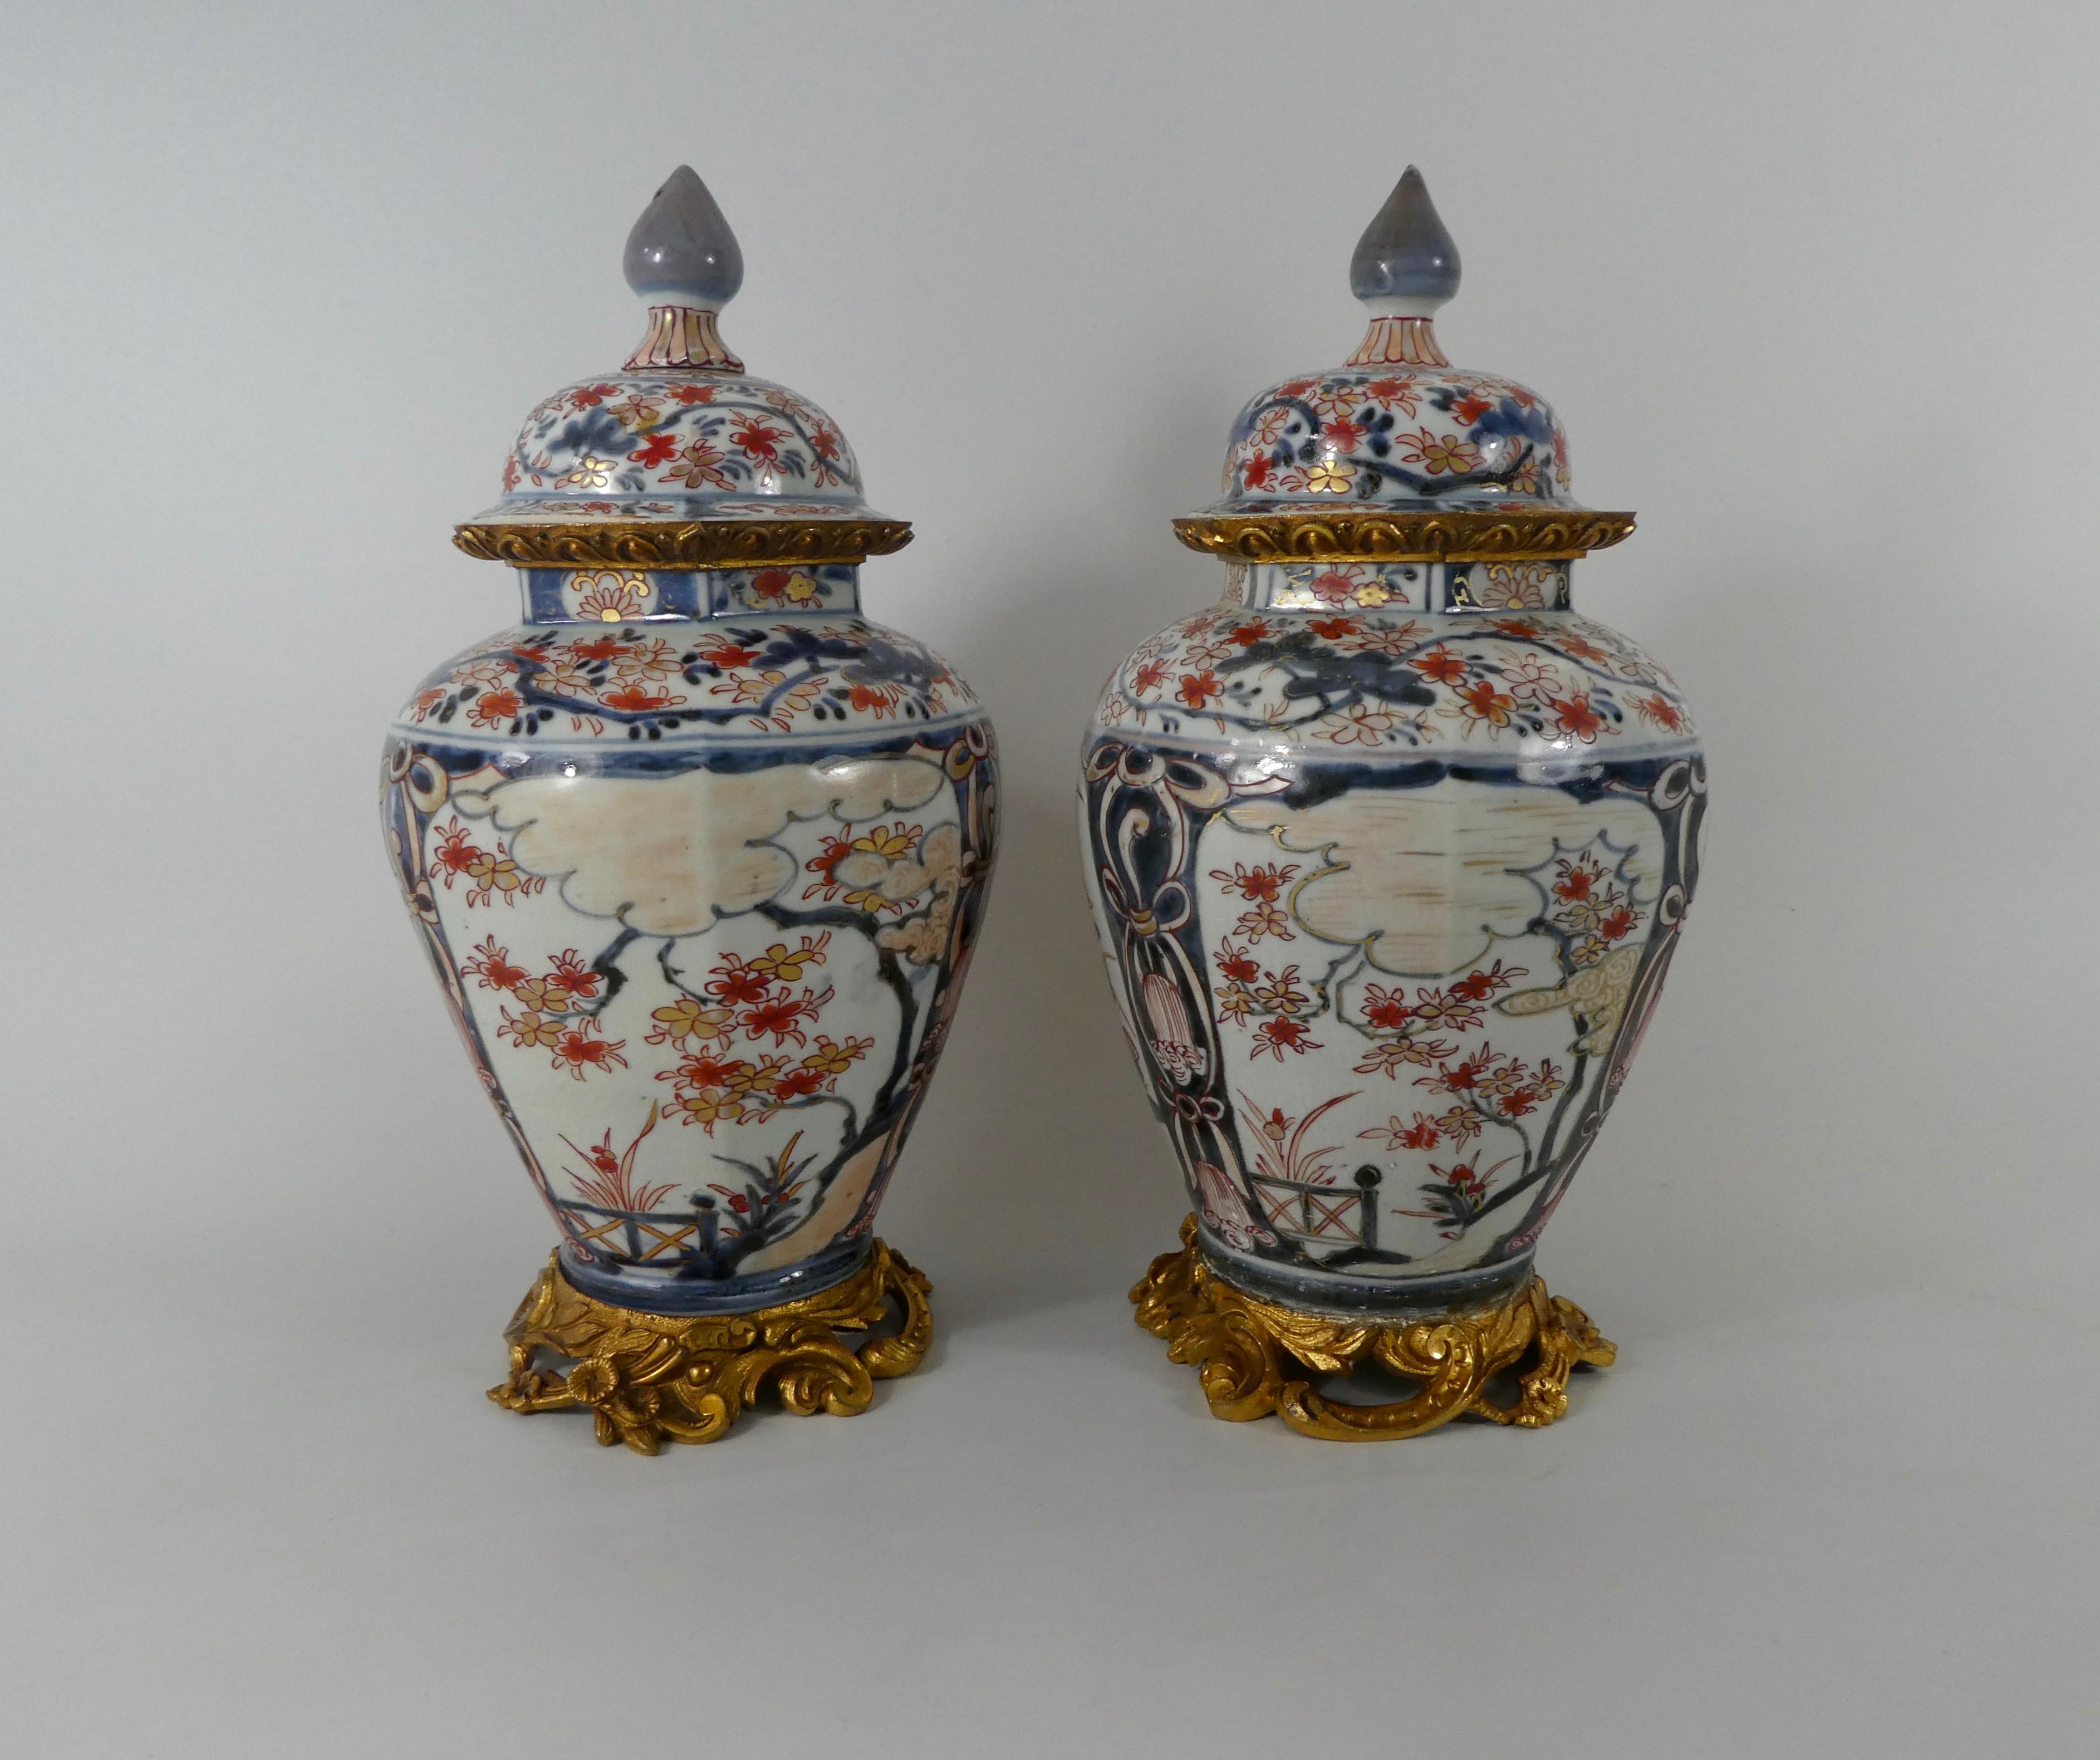 Pair Japanese Imari porcelain vases and covers, c. 1690. Genroku Period. 2